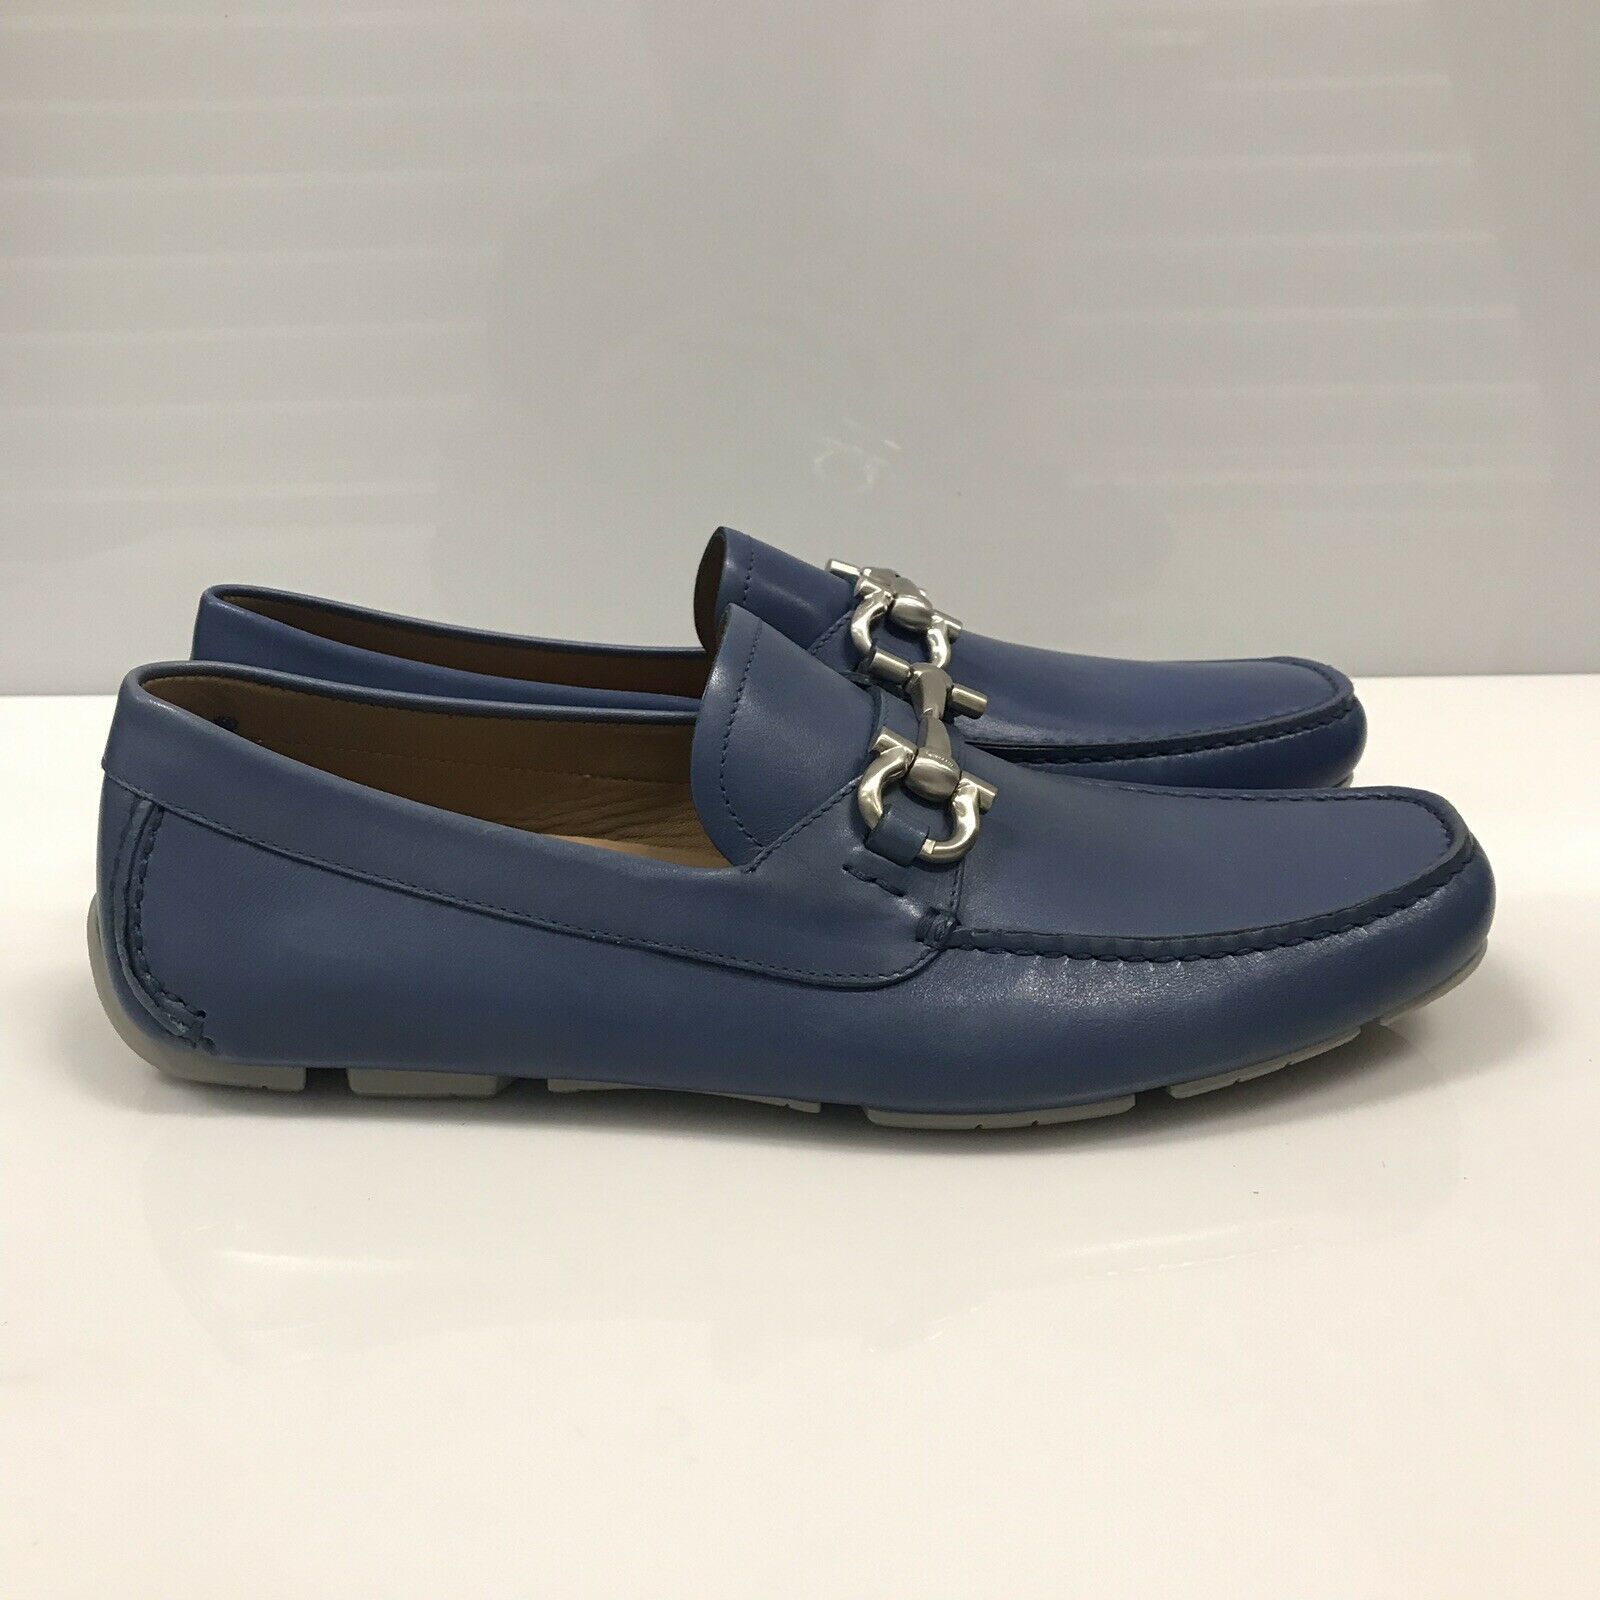 L-4006198 New Salvatore Ferragamo Parigi Blue Loafers Shoes Size US 8 ...